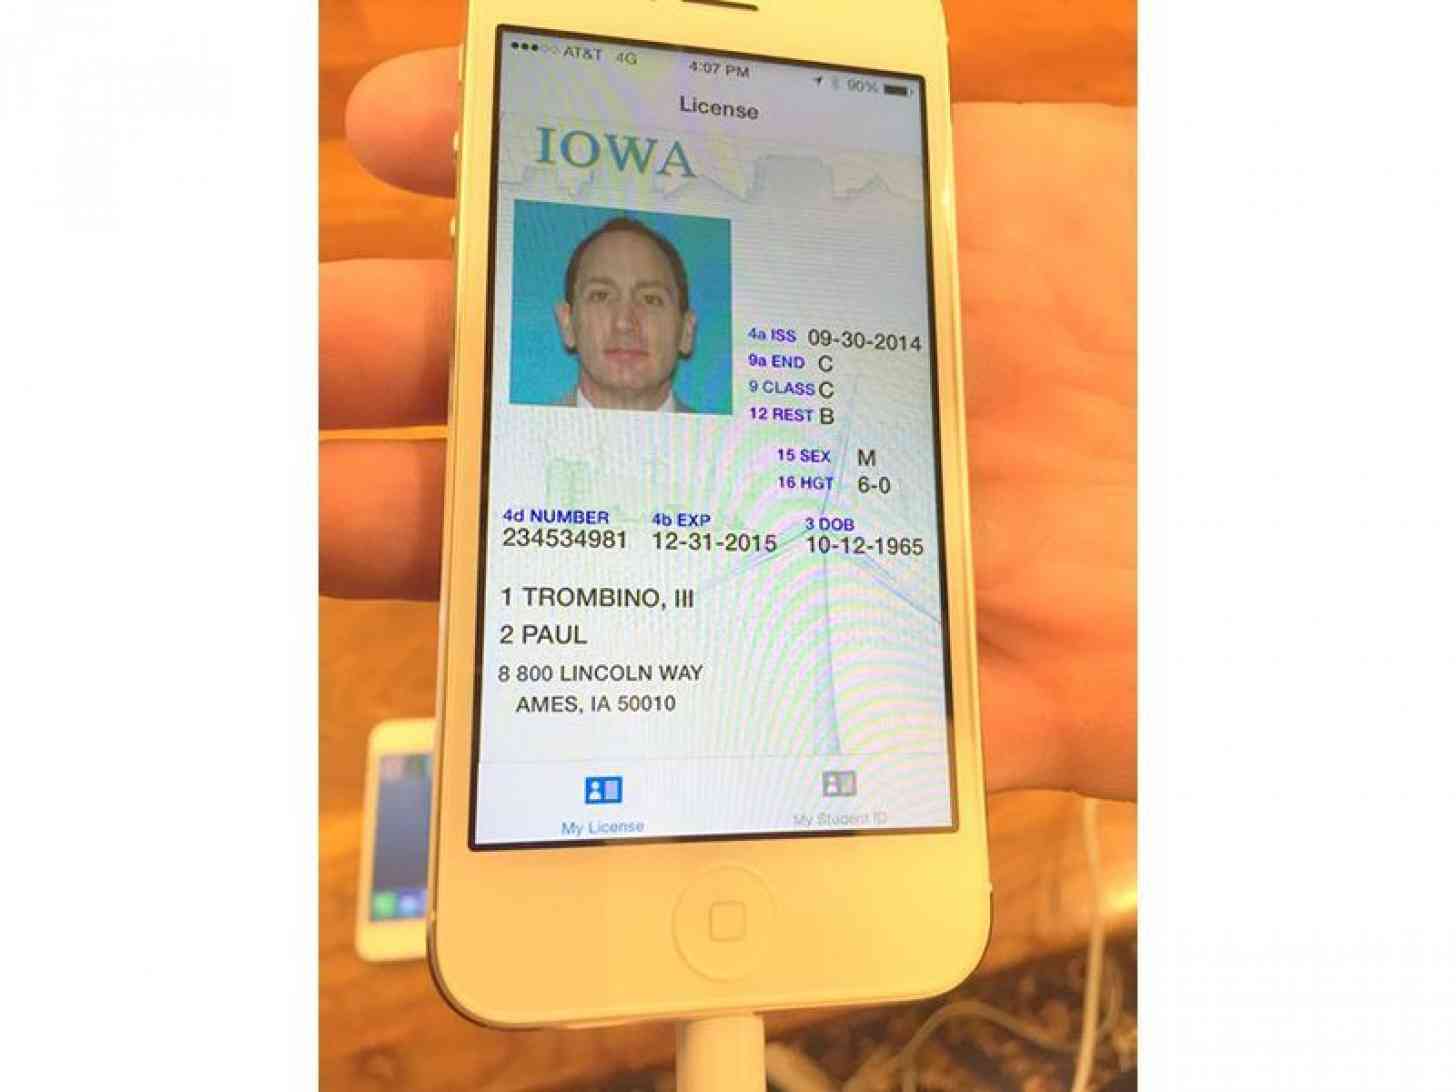 Iowa driver's license smartphone app